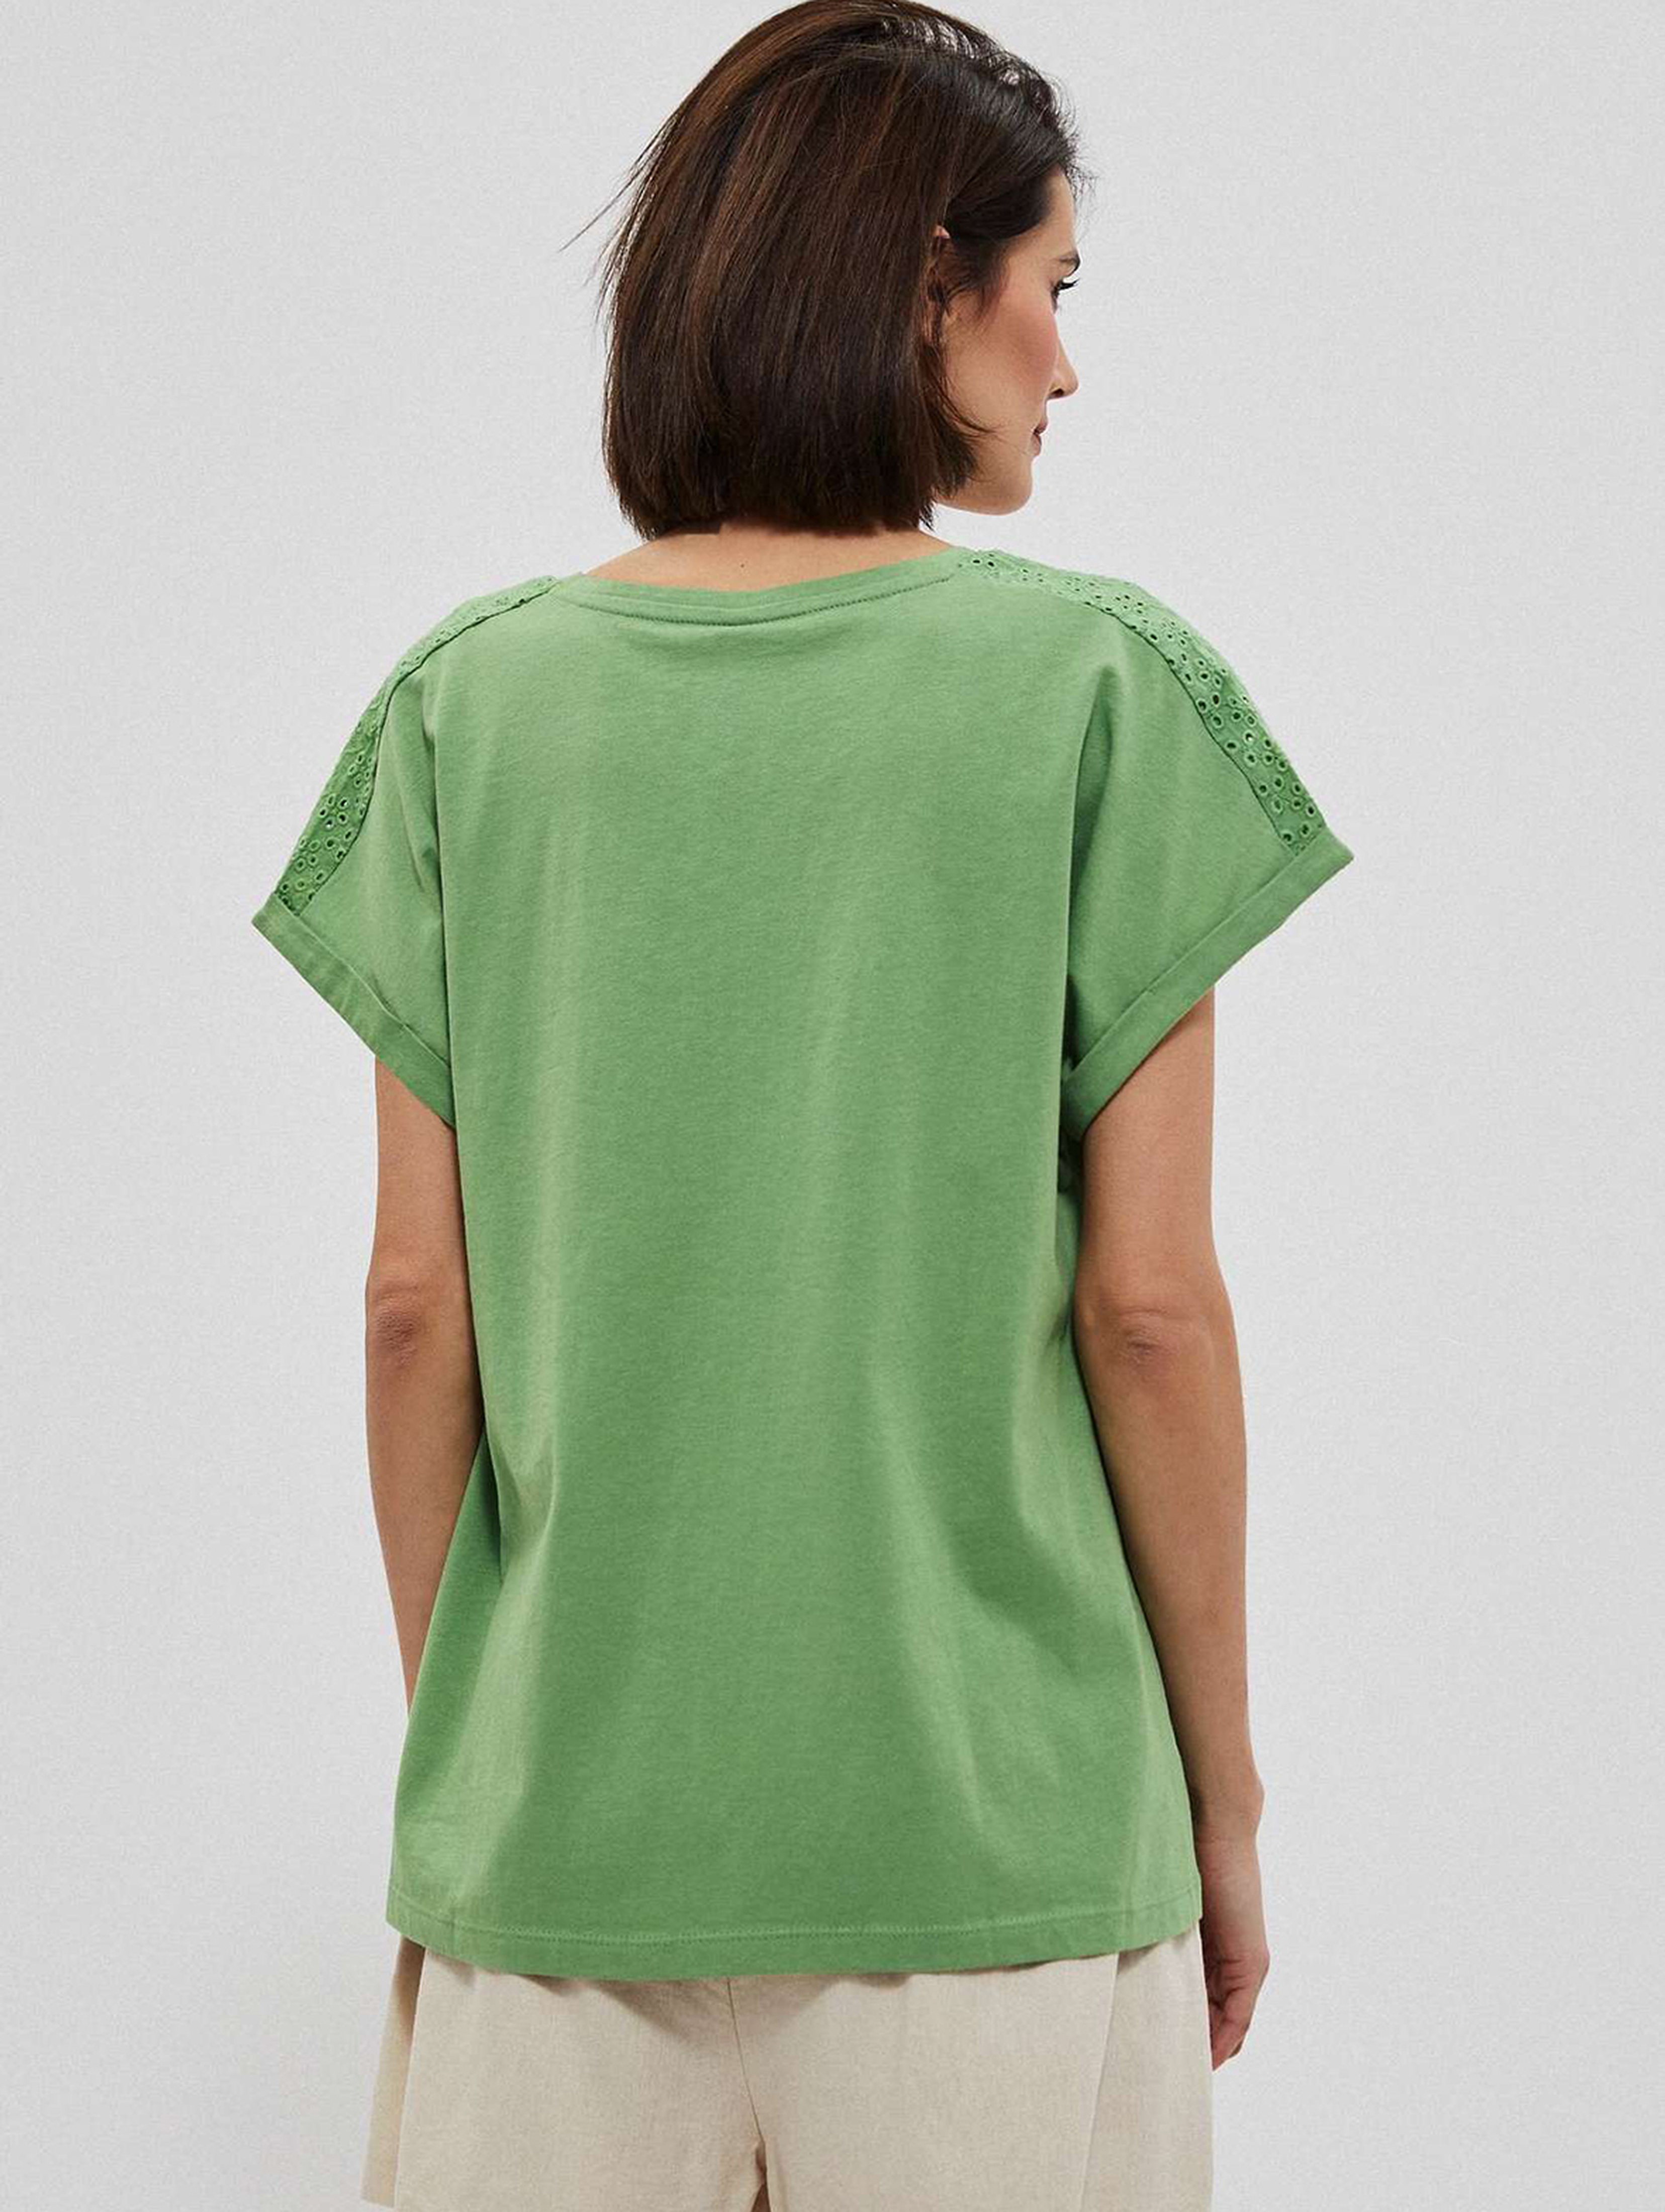 Bawełniany t-shirt damski z ozdobnym wiązaniem zielony